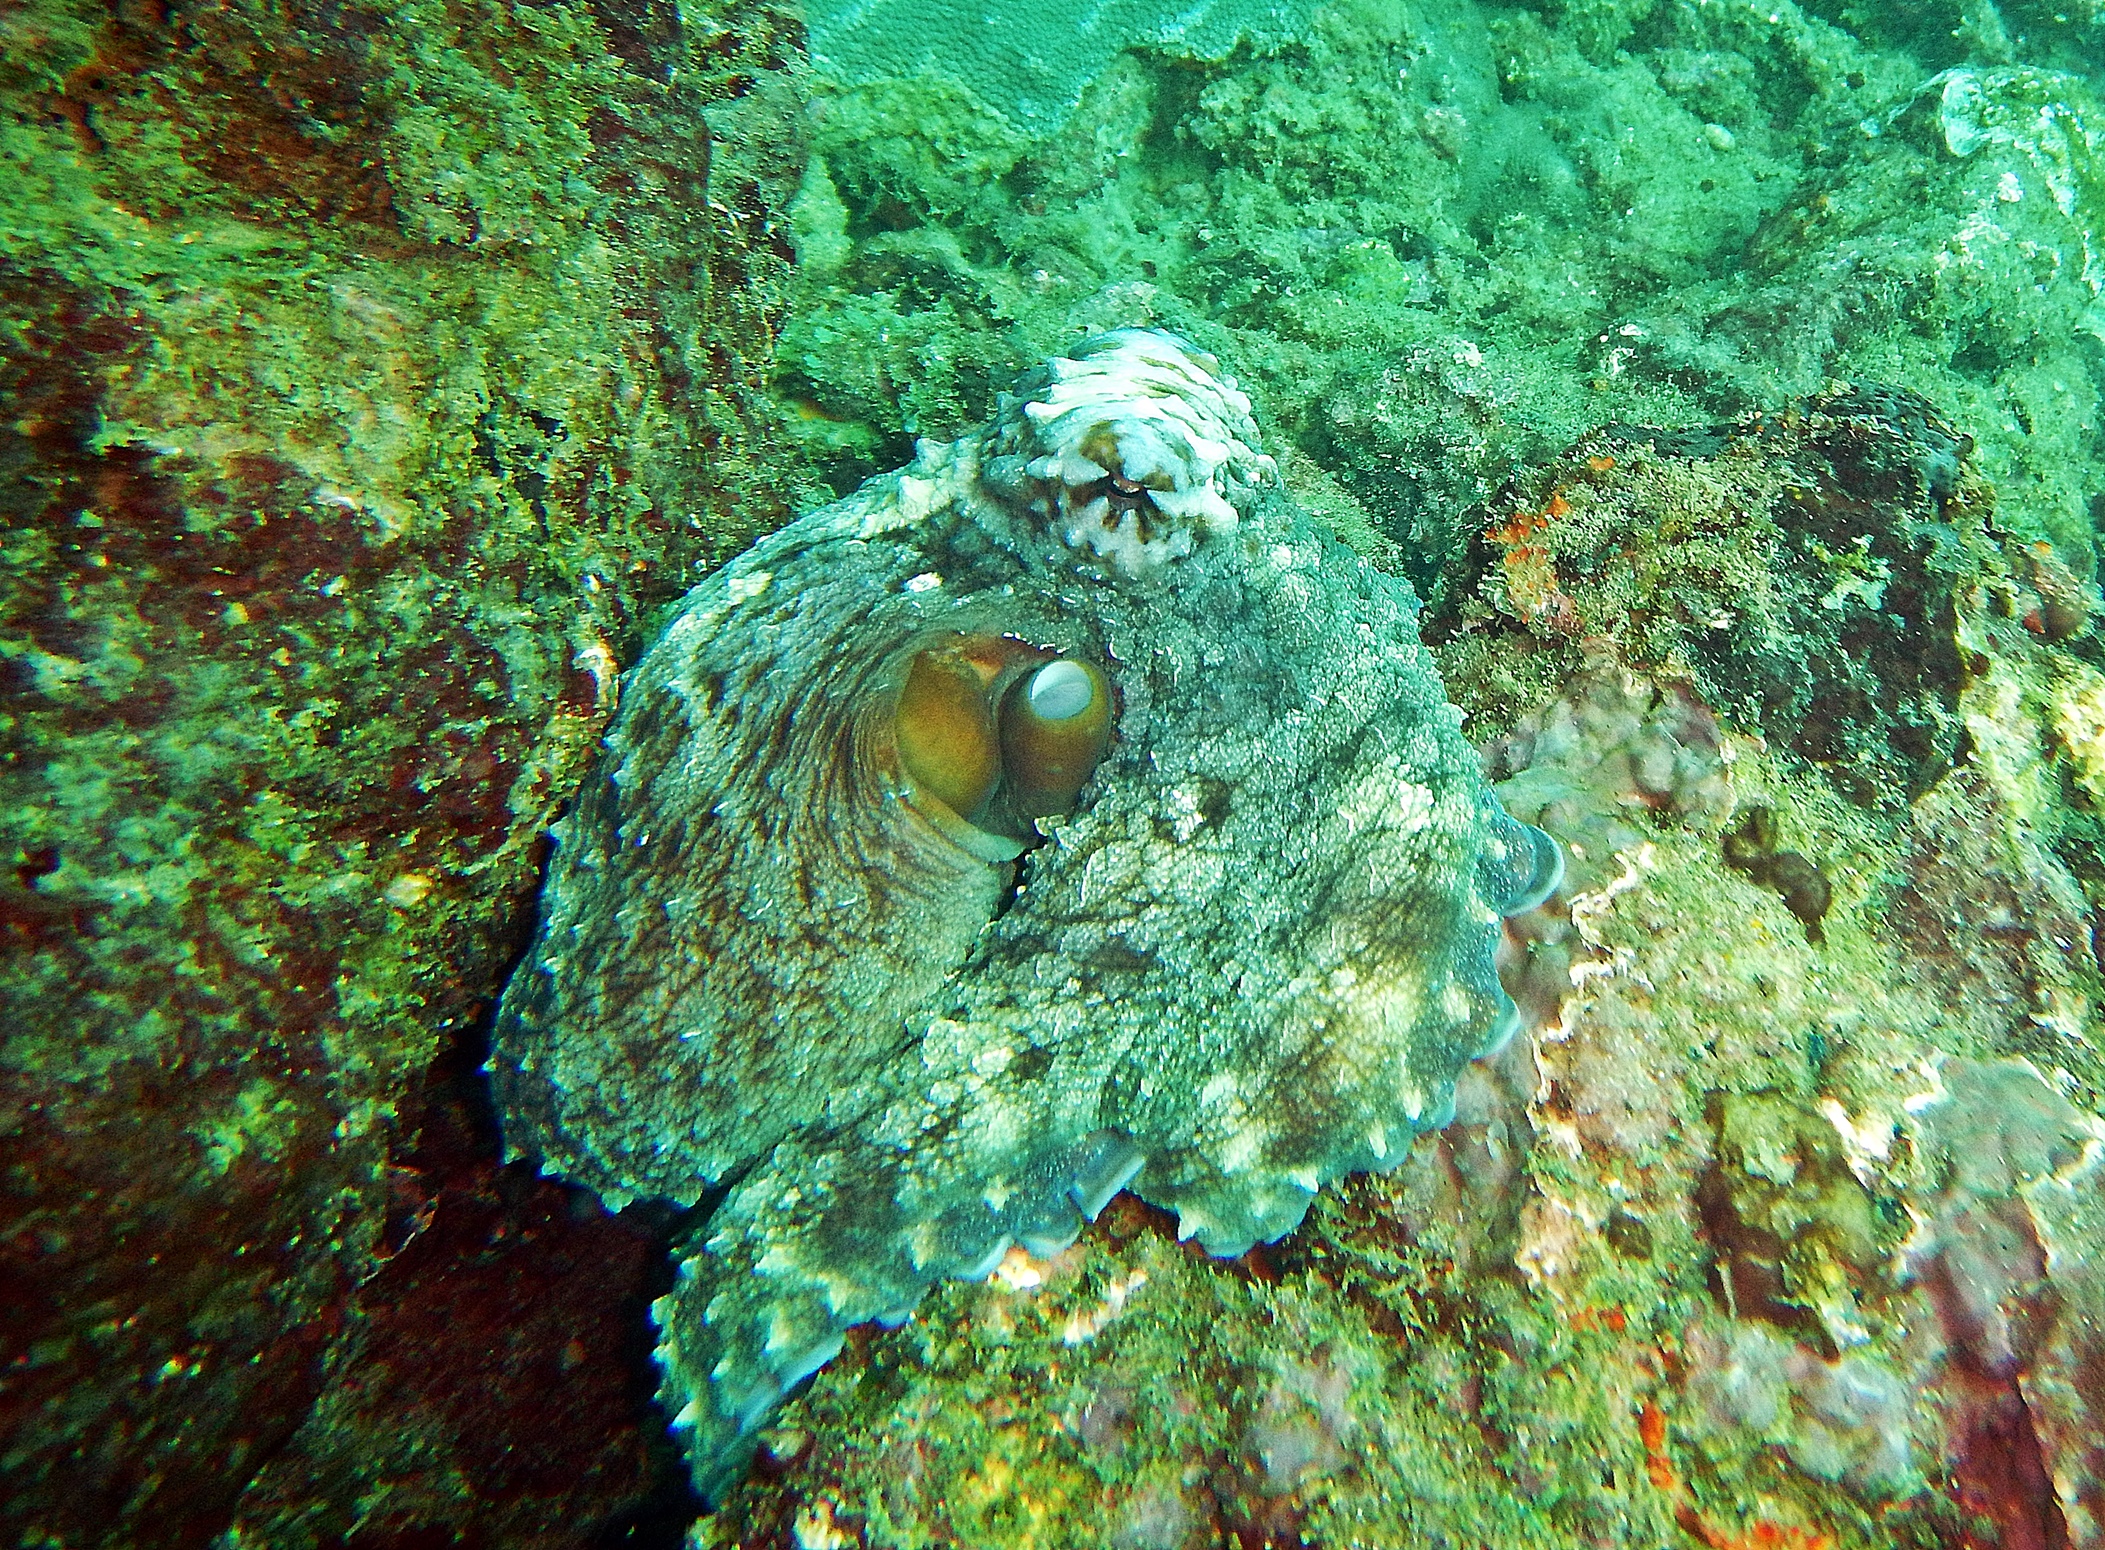 Octopus, Hikkaduwa